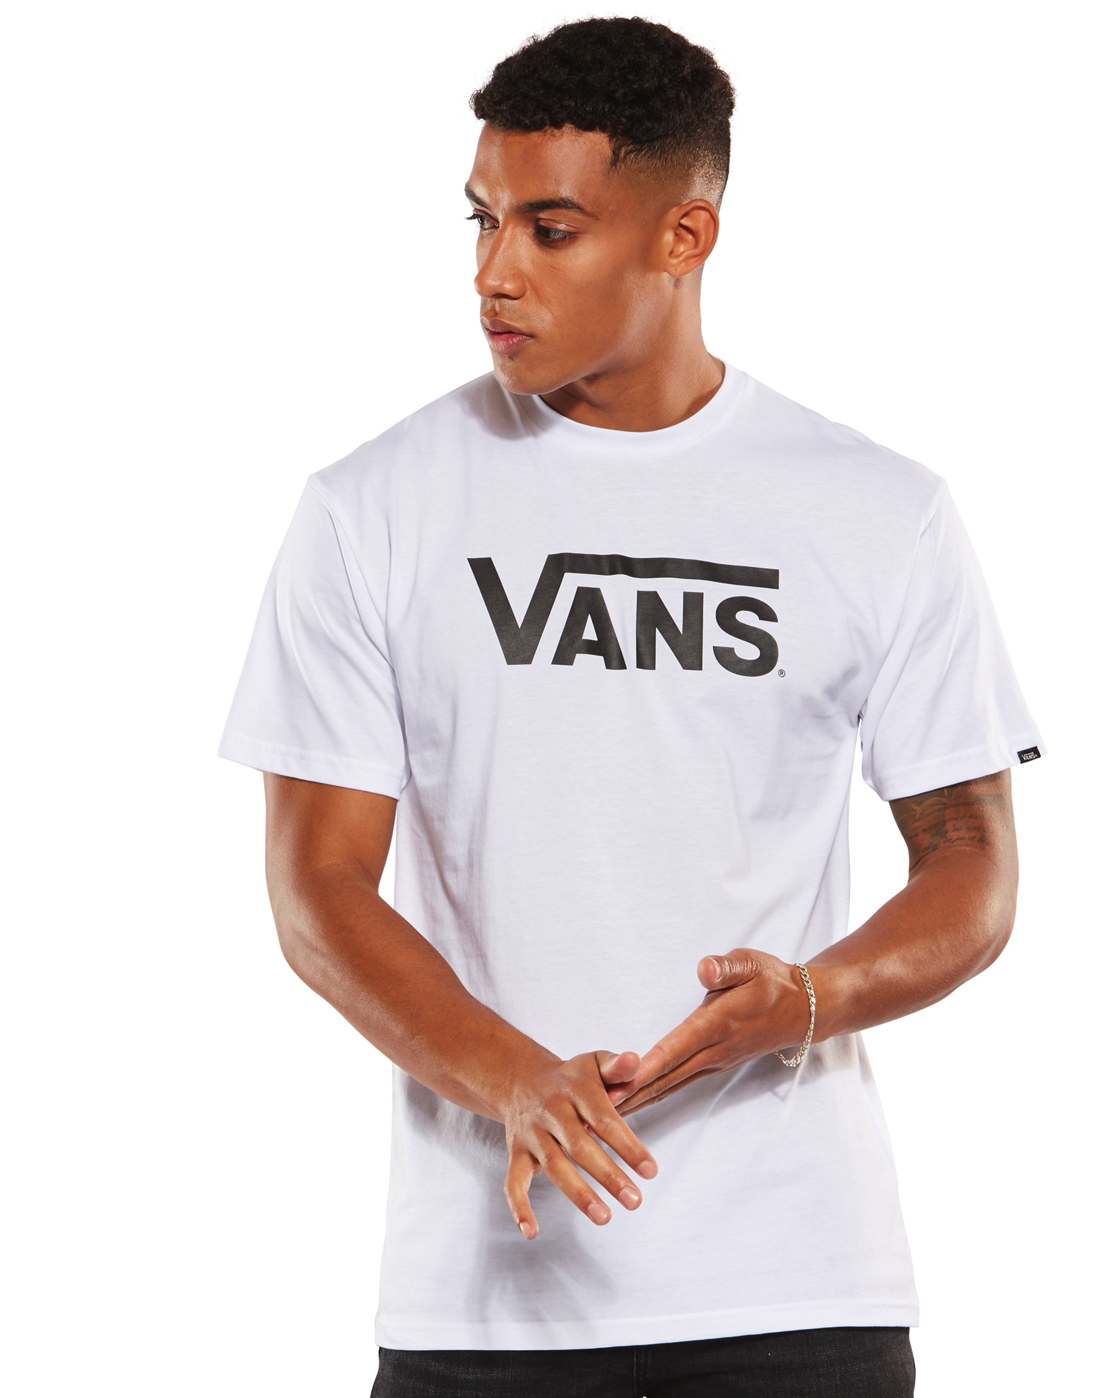 Buy > vans white t shirt mens > in stock